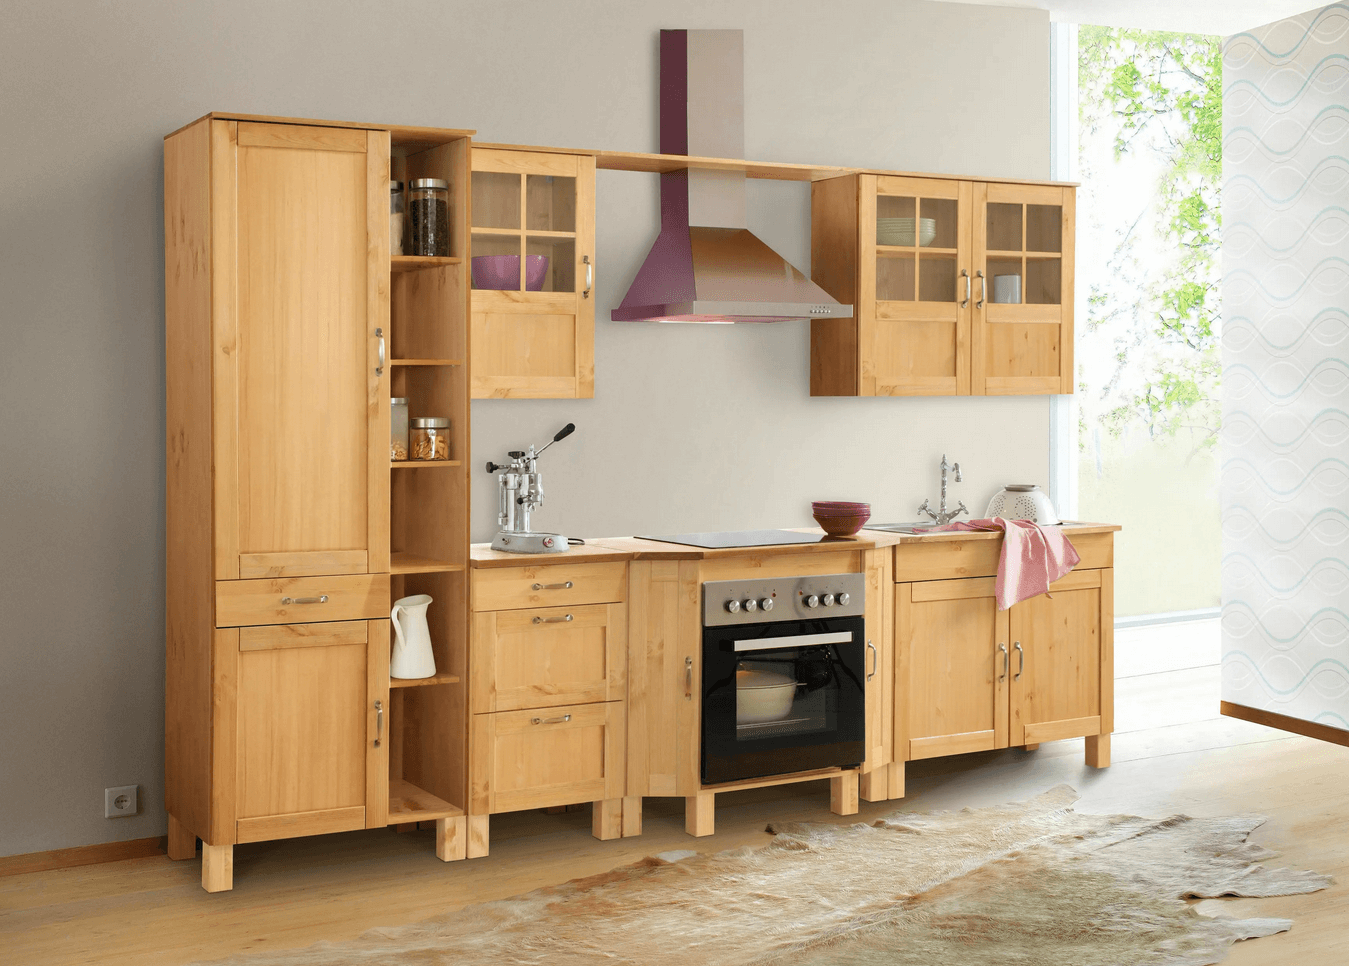 Meine Erfahrung: Gute Massivholz-Küchenmöbel online kaufen